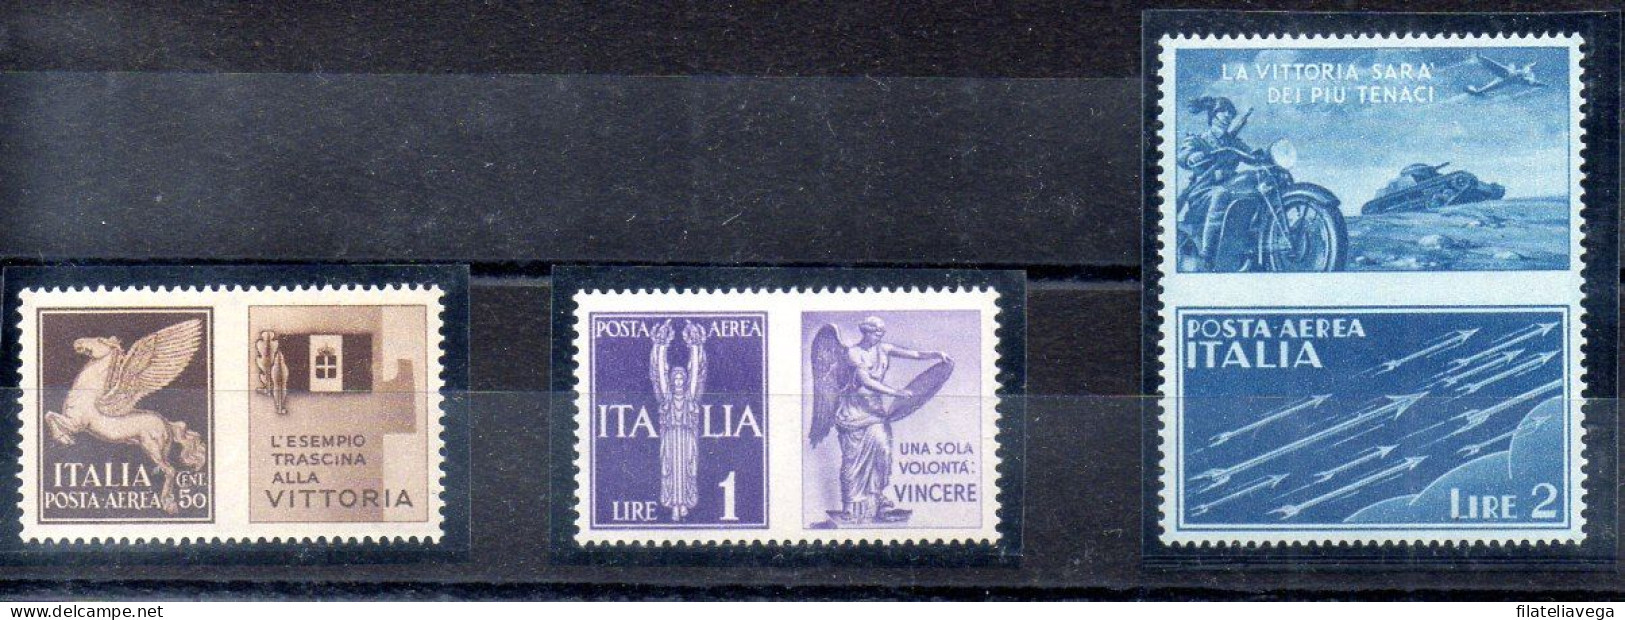 Italia 3 Series "PROPAGANDA DE GUERRA" Año 1942 -NO EMITIDOS- Nº Michel 328P5 + 330P6 + 331P7 * - War Propaganda